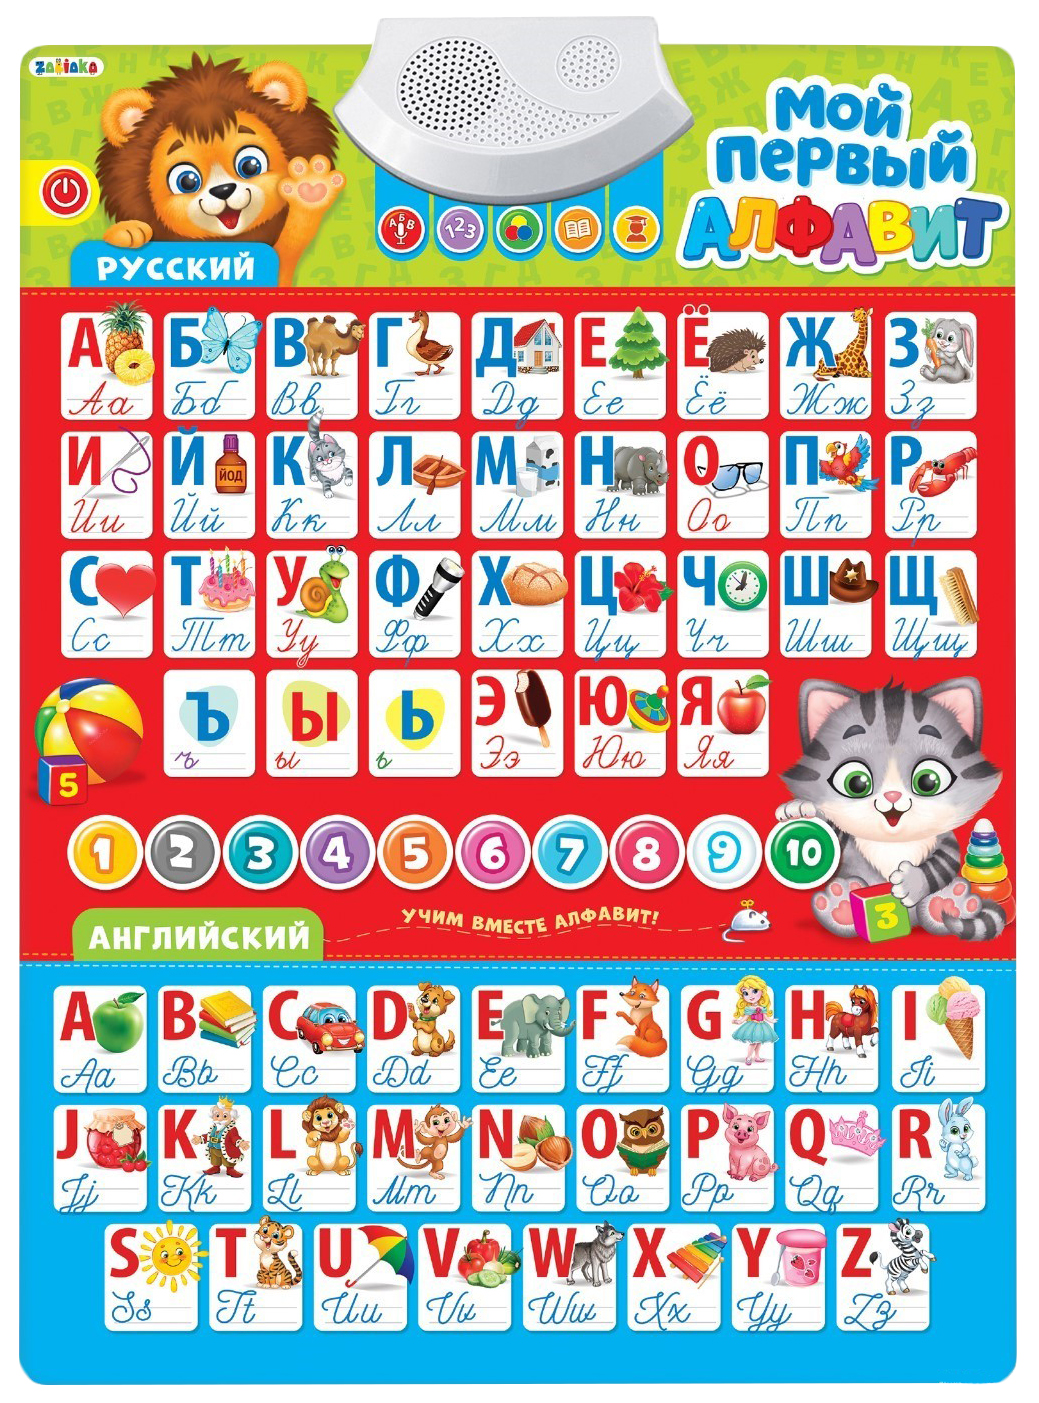 Обучающий плакат «Русский и английский алфавит» со звуком, работает от батареек Забияка обучающий электронный плакат zoo азбука работает от батареек